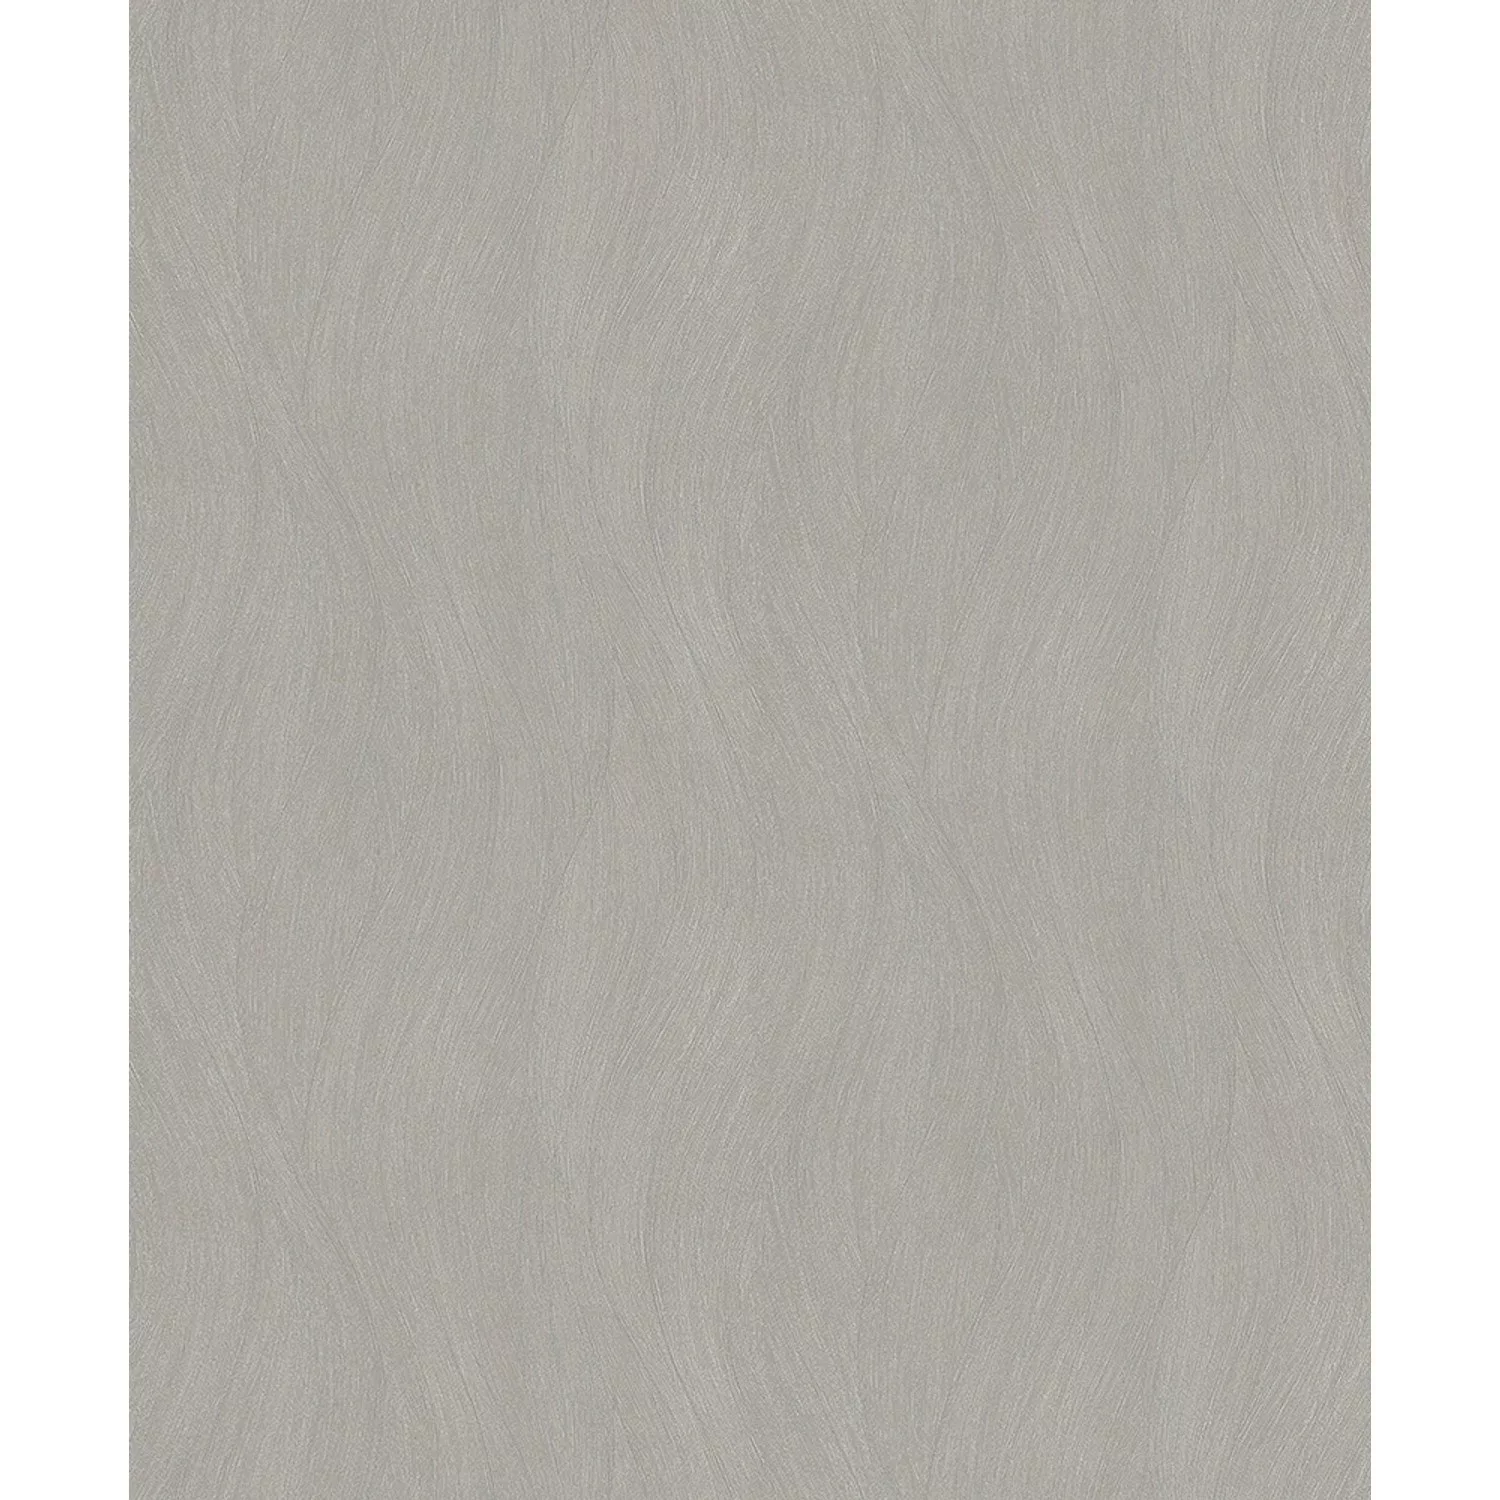 Bricoflor Moderne Tapete in Braun 10317-11 günstig online kaufen